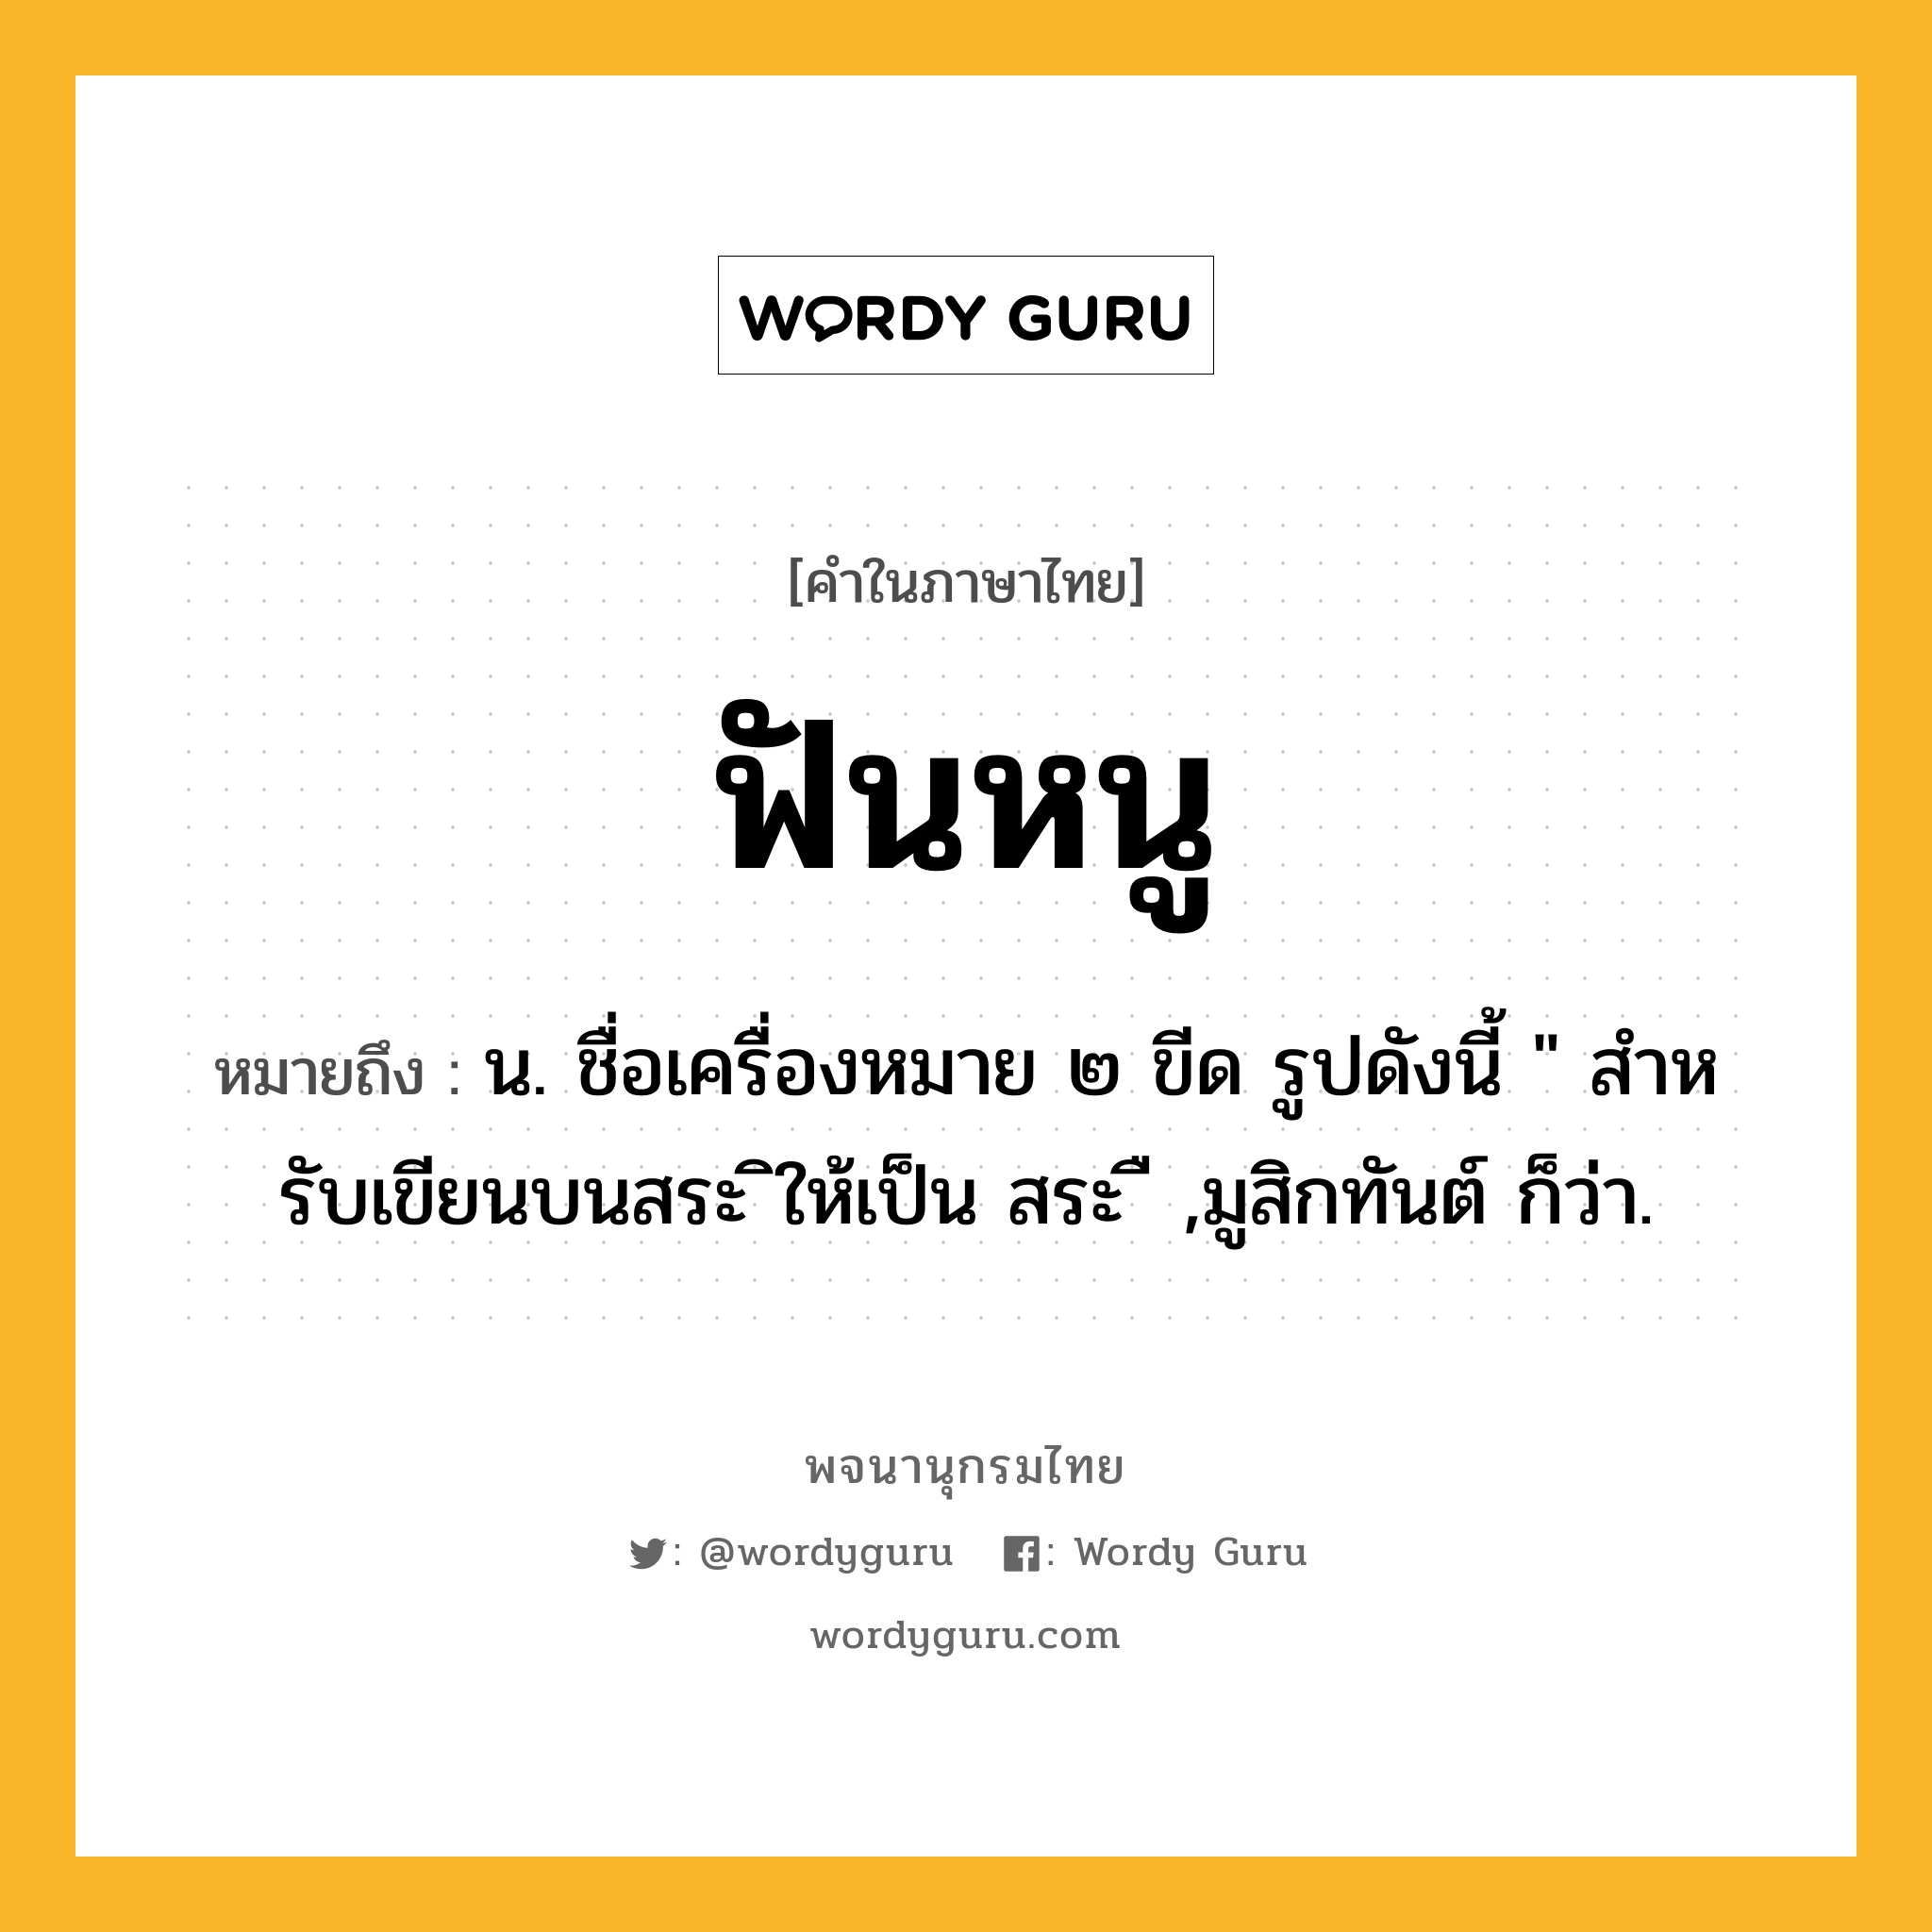 ฟันหนู หมายถึงอะไร?, คำในภาษาไทย ฟันหนู หมายถึง น. ชื่อเครื่องหมาย ๒ ขีด รูปดังนี้ " สําหรับเขียนบนสระ ิให้เป็น สระ ื ,มูสิกทันต์ ก็ว่า.